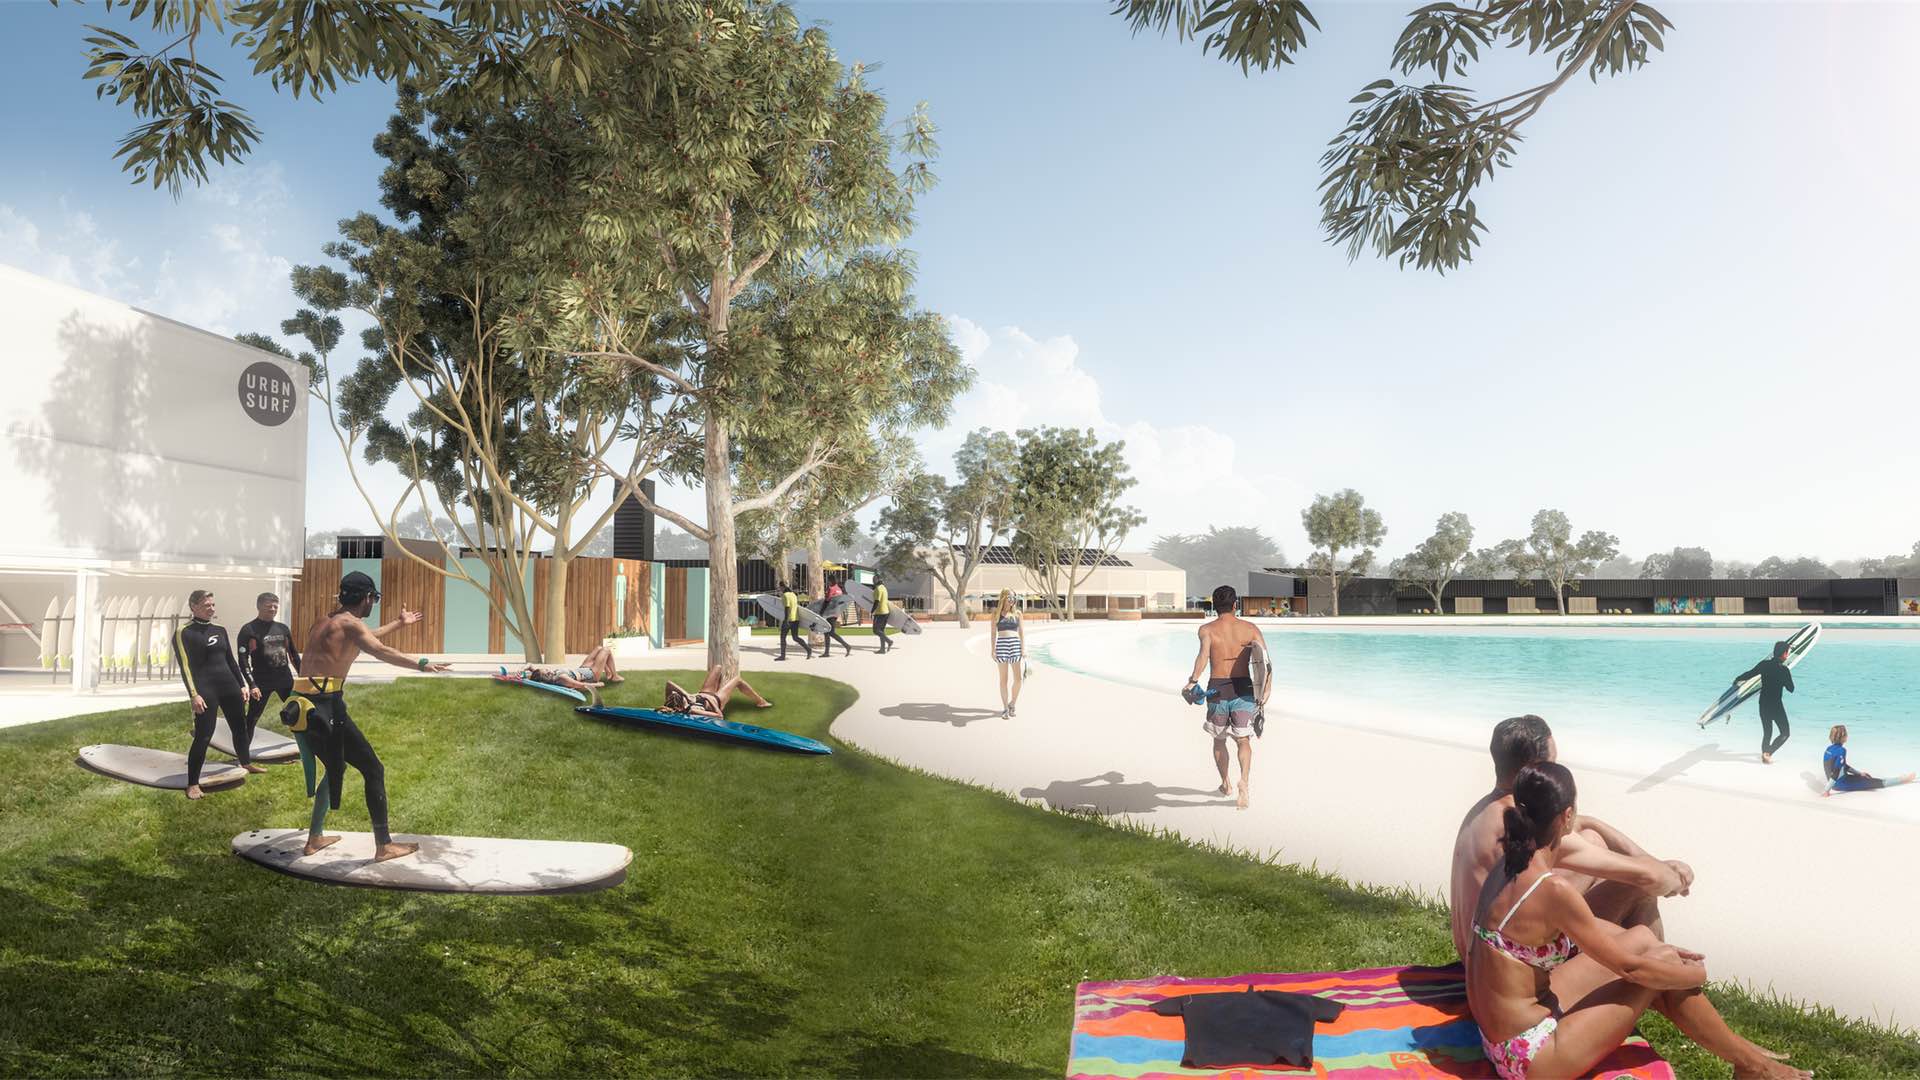 Work on Australia's First Surf Wave Park Kicks Off Next Month